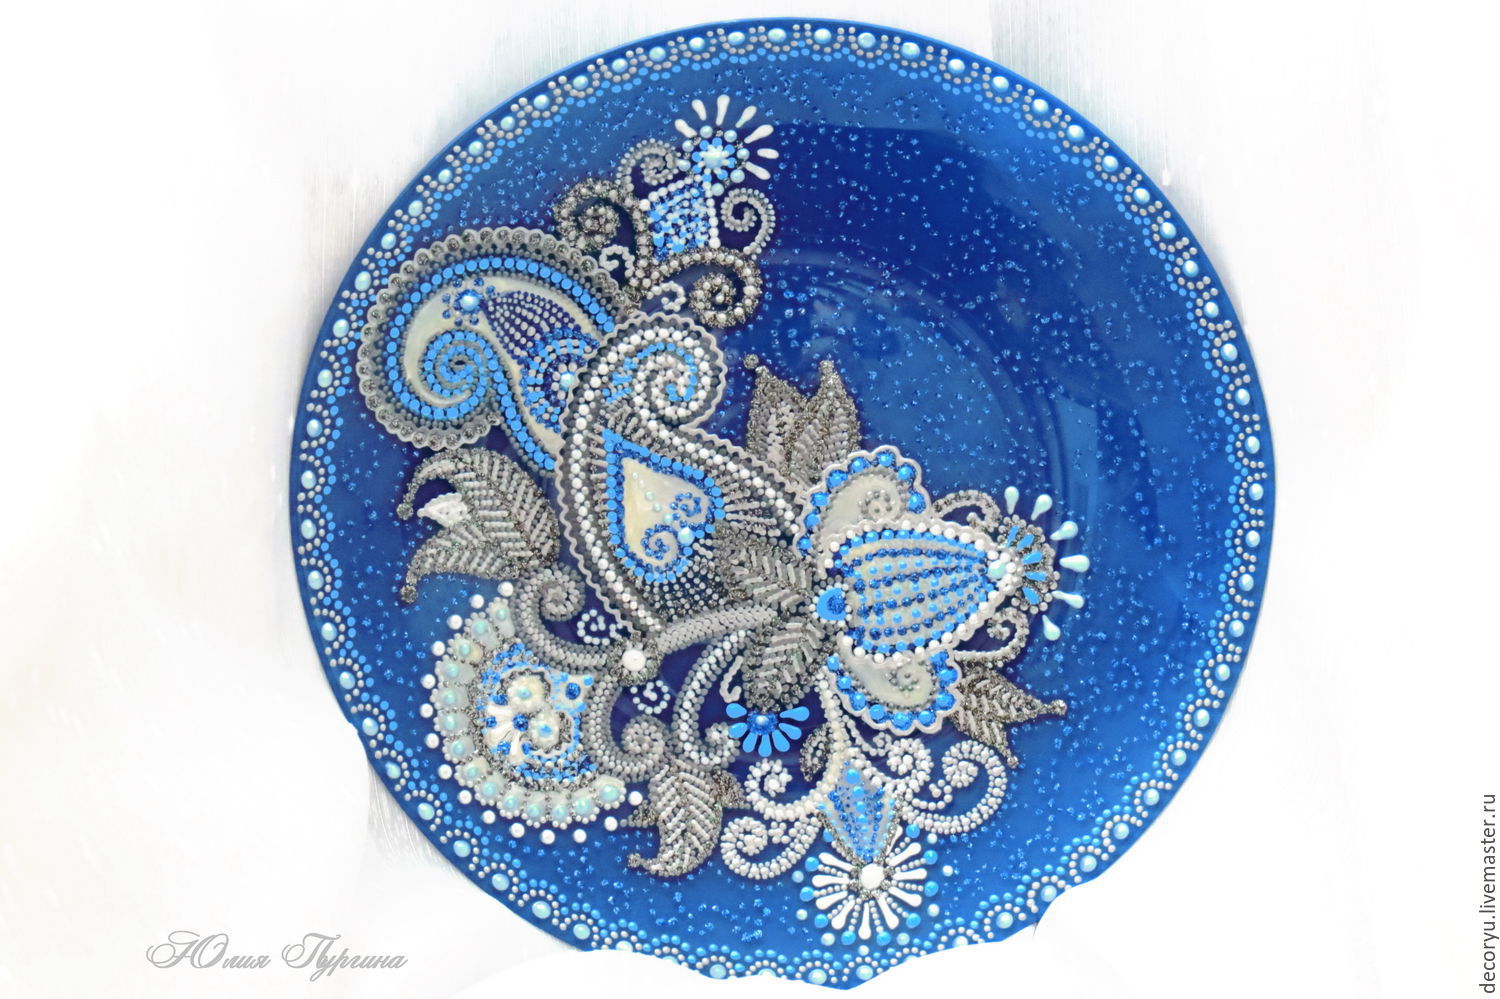 Точечная роспись тарелок в голубых тонах